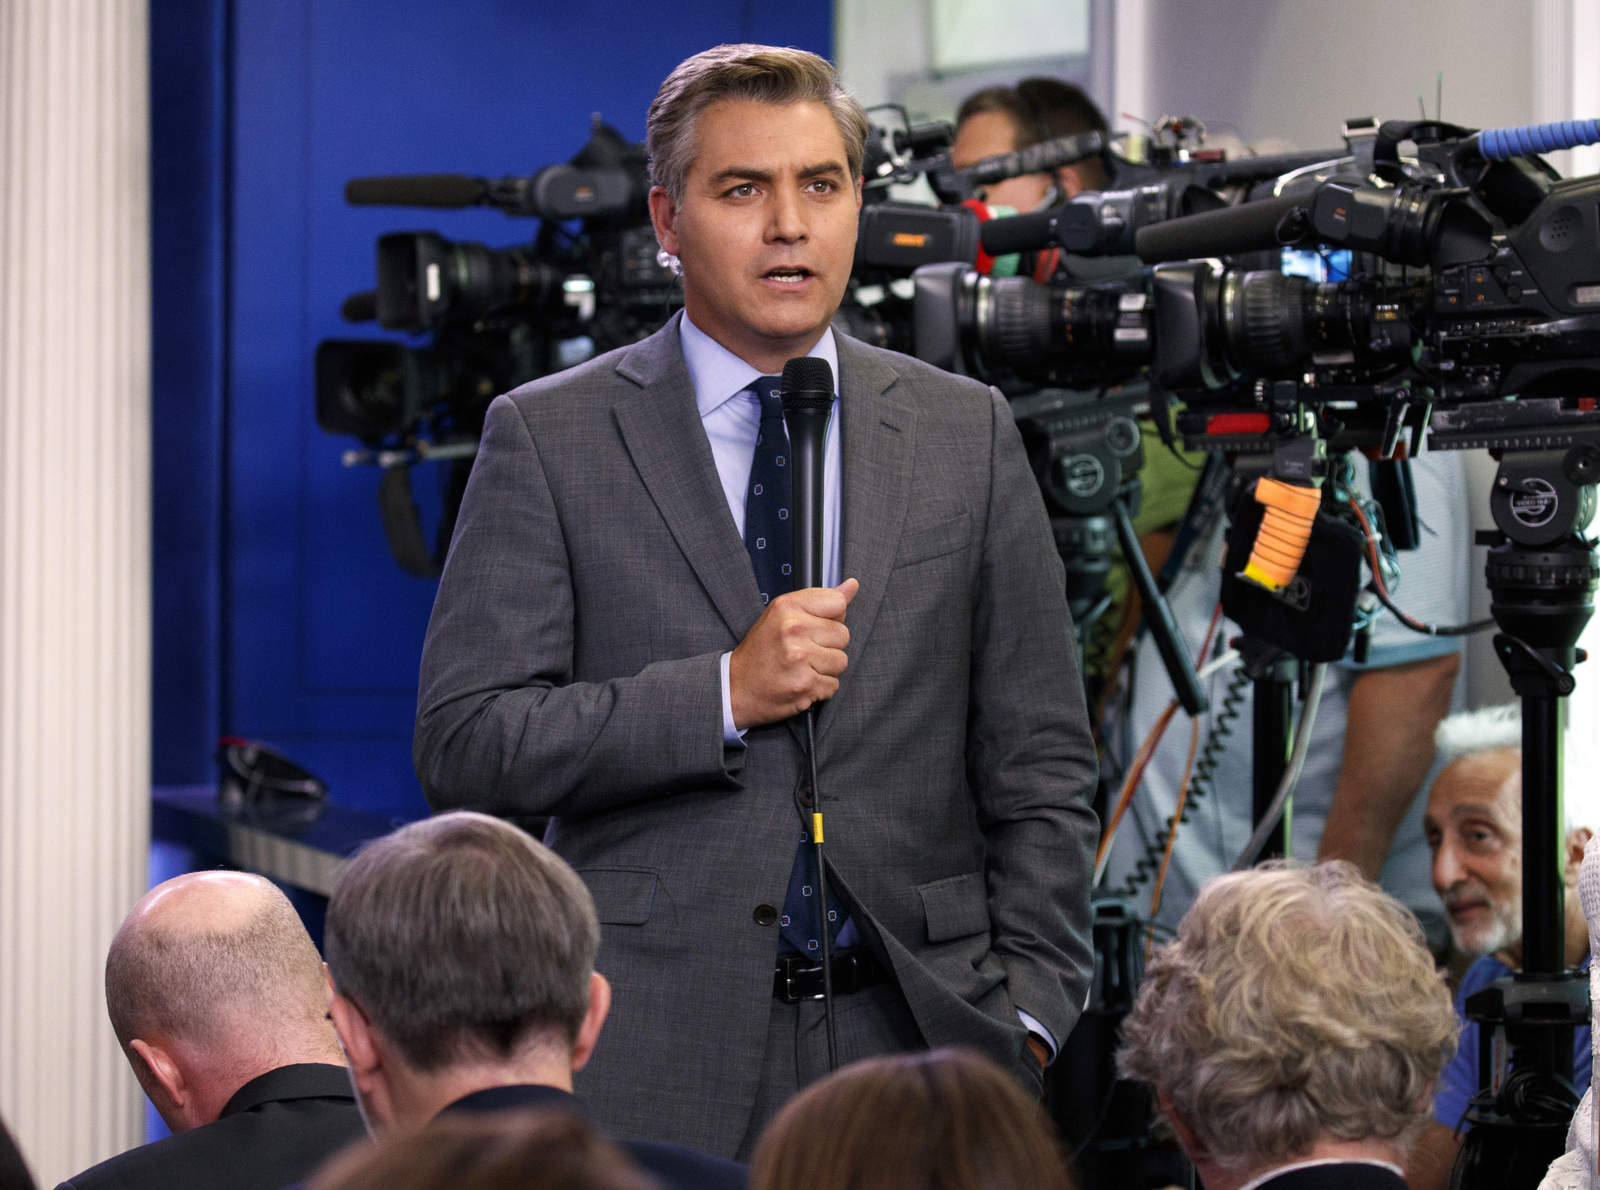 Juez ordena a Casa Blanca devolver acreditación a periodista de CNN